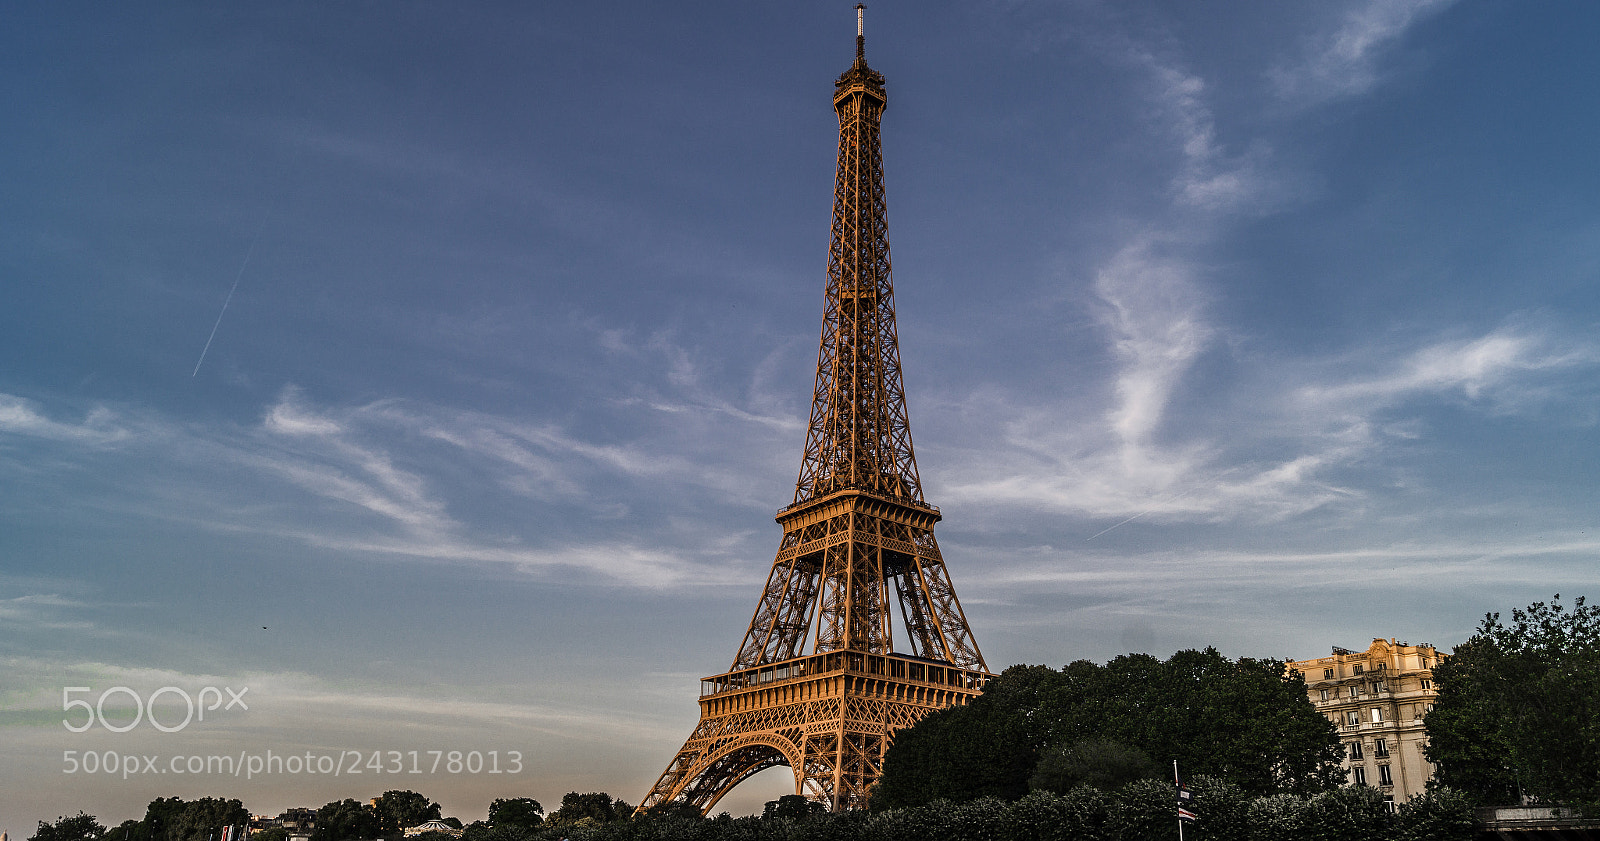 Sony SLT-A58 sample photo. Eiffel tower photography